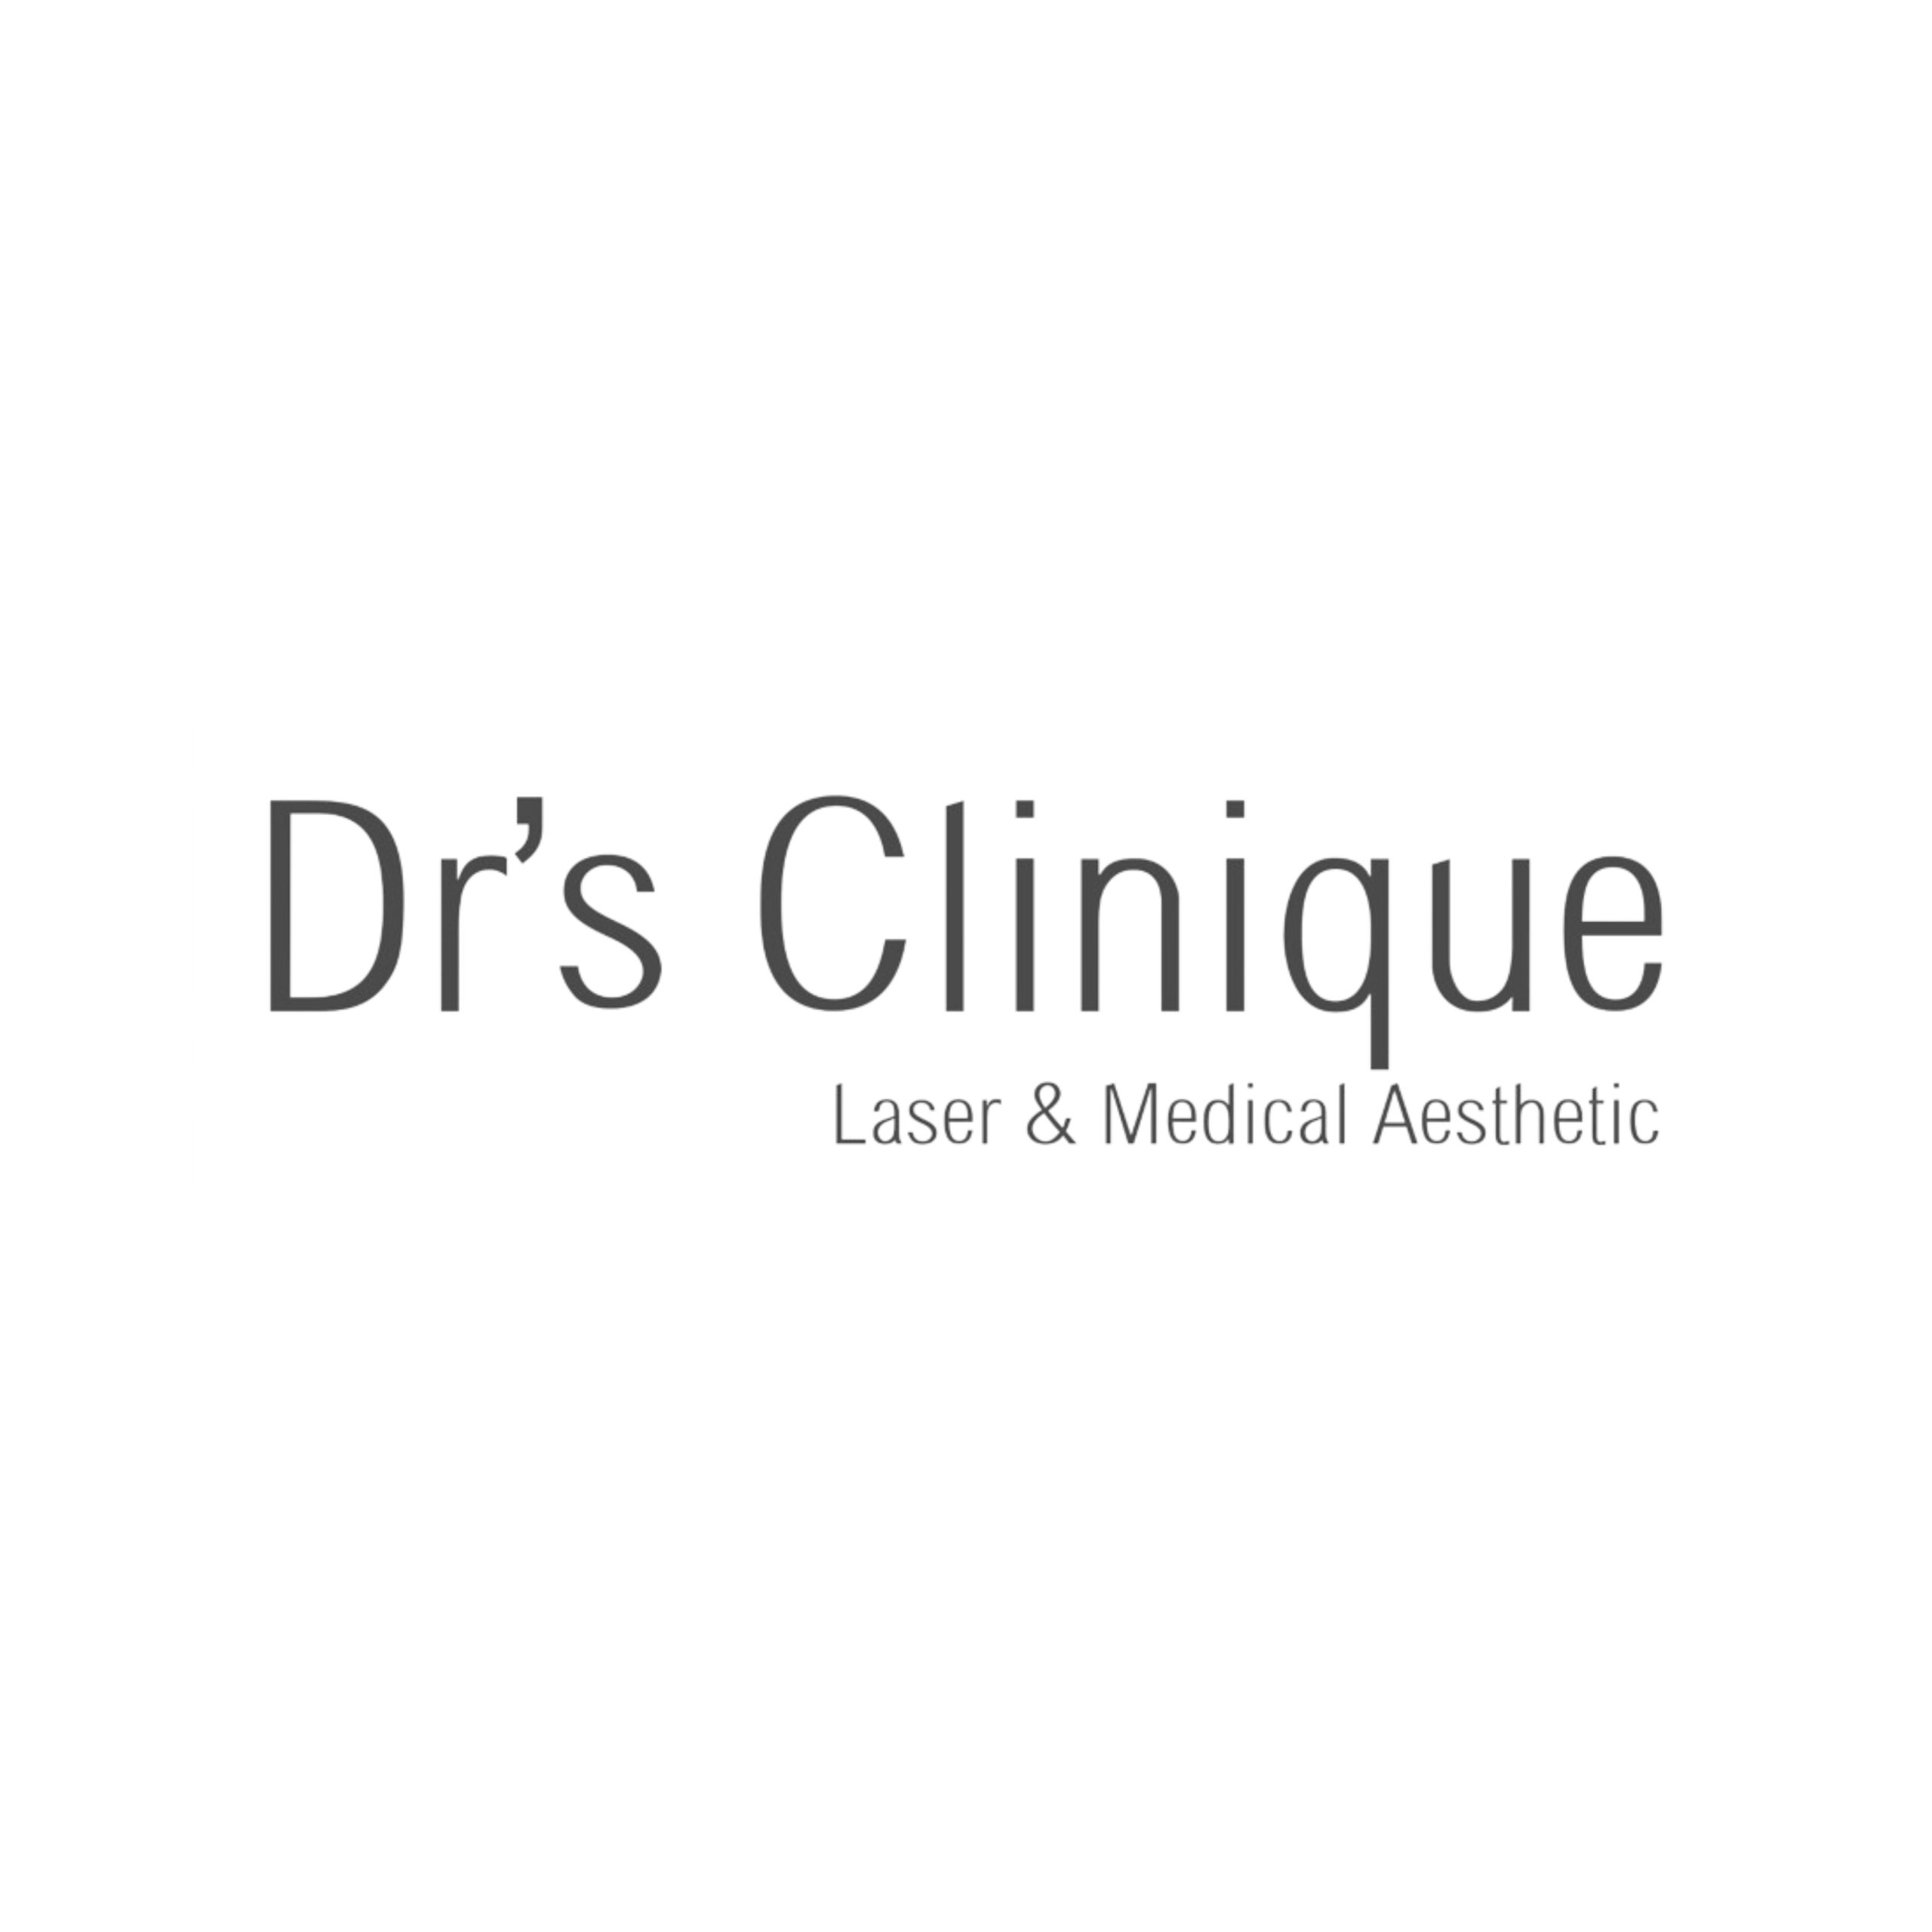 Dr's Clinique